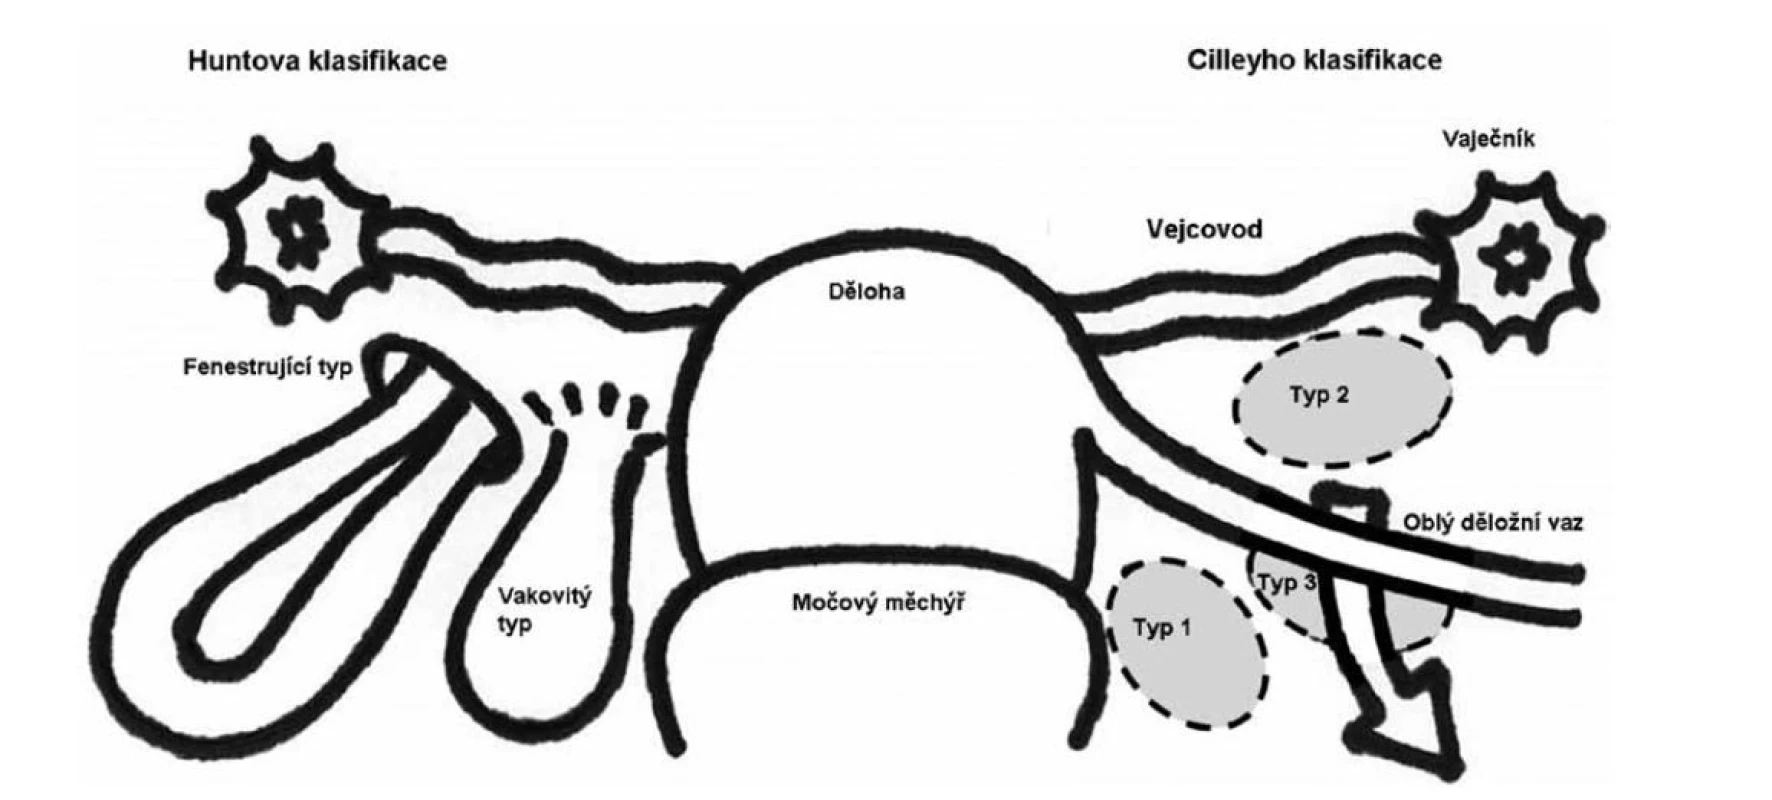 Klasifikace defektů děložních vazů [3]<br>
Fig. 1: Classification of uterine ligament defects [3]